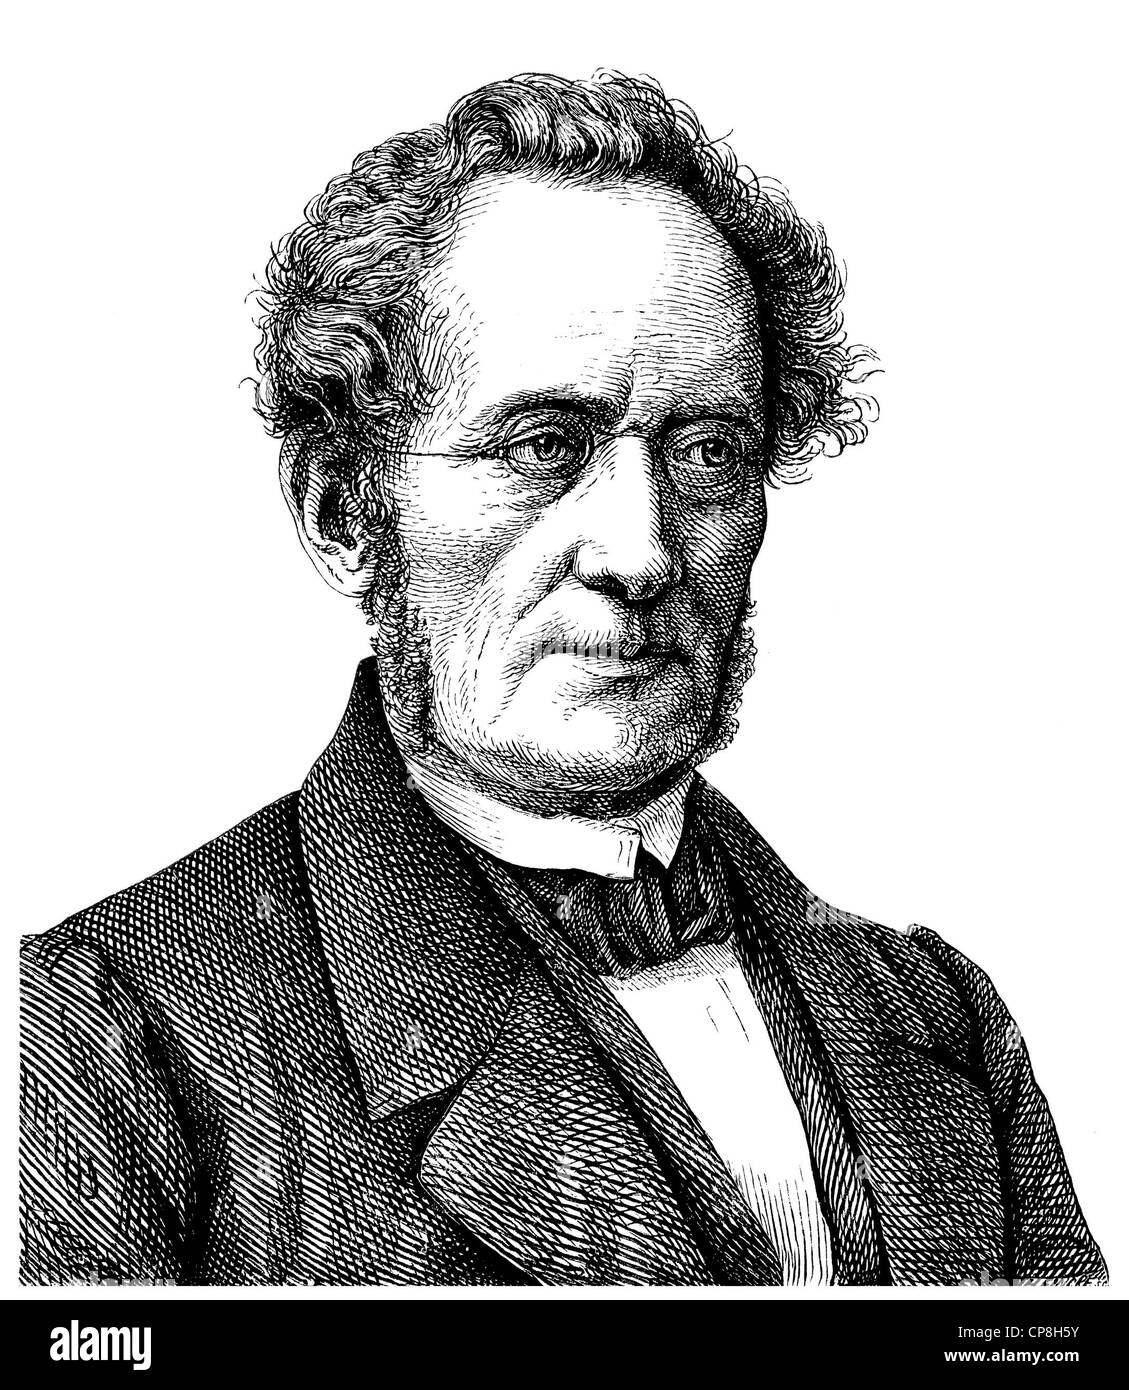 Friedrich Wilhelm Ritschl, 1806 - 1876, a German classical philologist and professor, Historische Zeichnung aus dem 19. Jahrhund Stock Photo